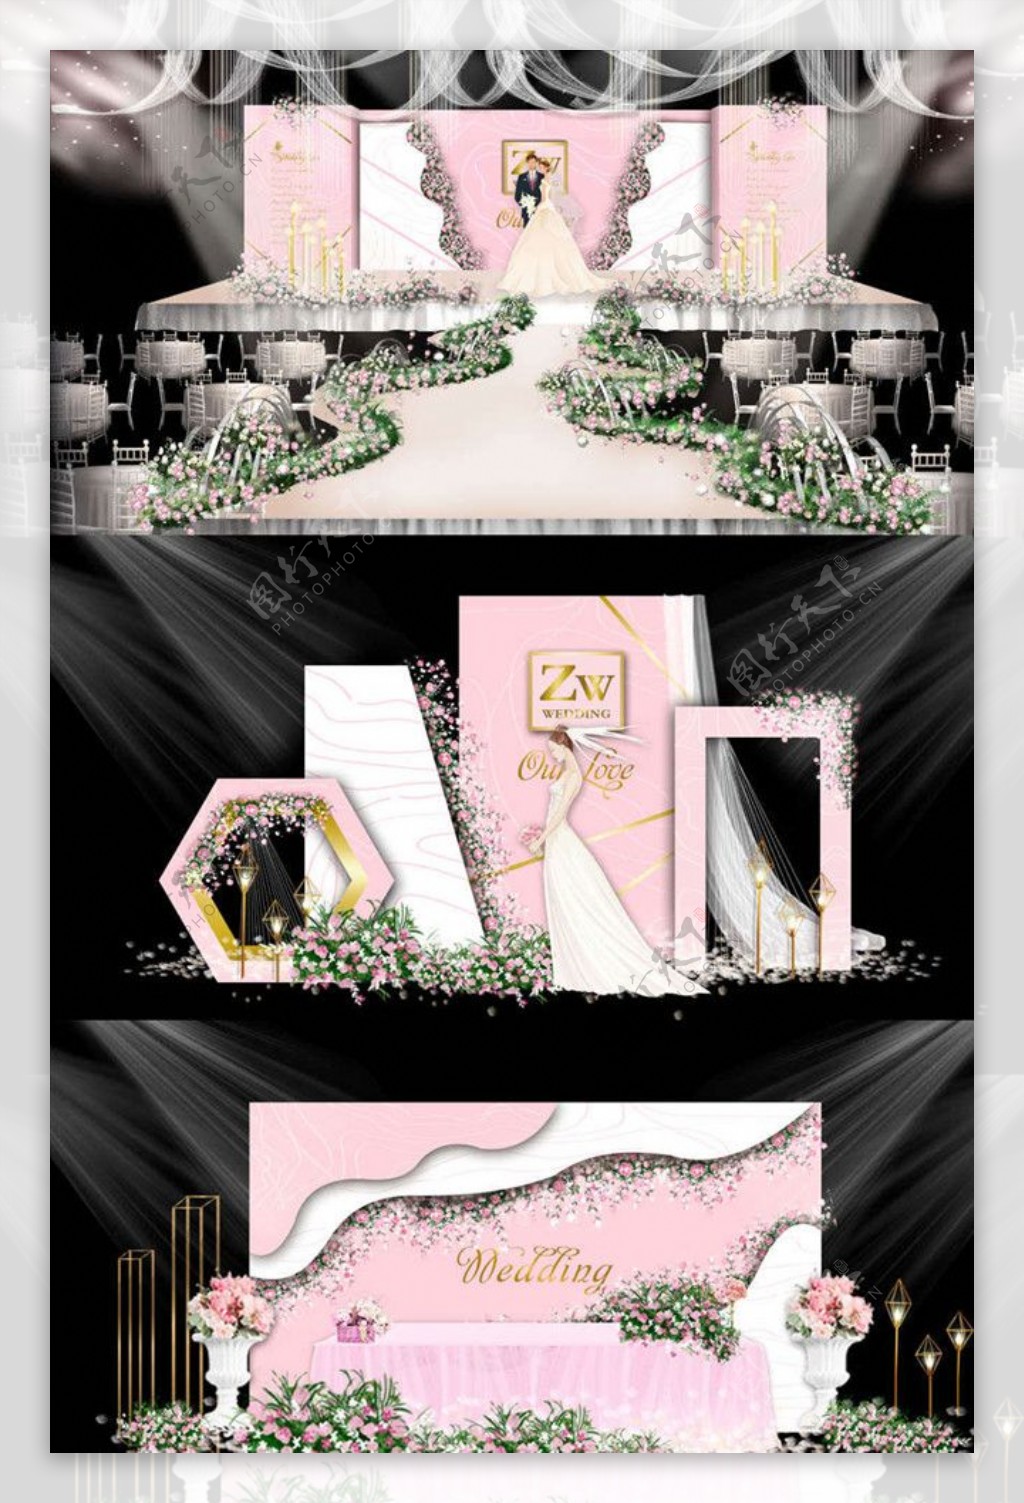 粉色主题婚礼设计图片